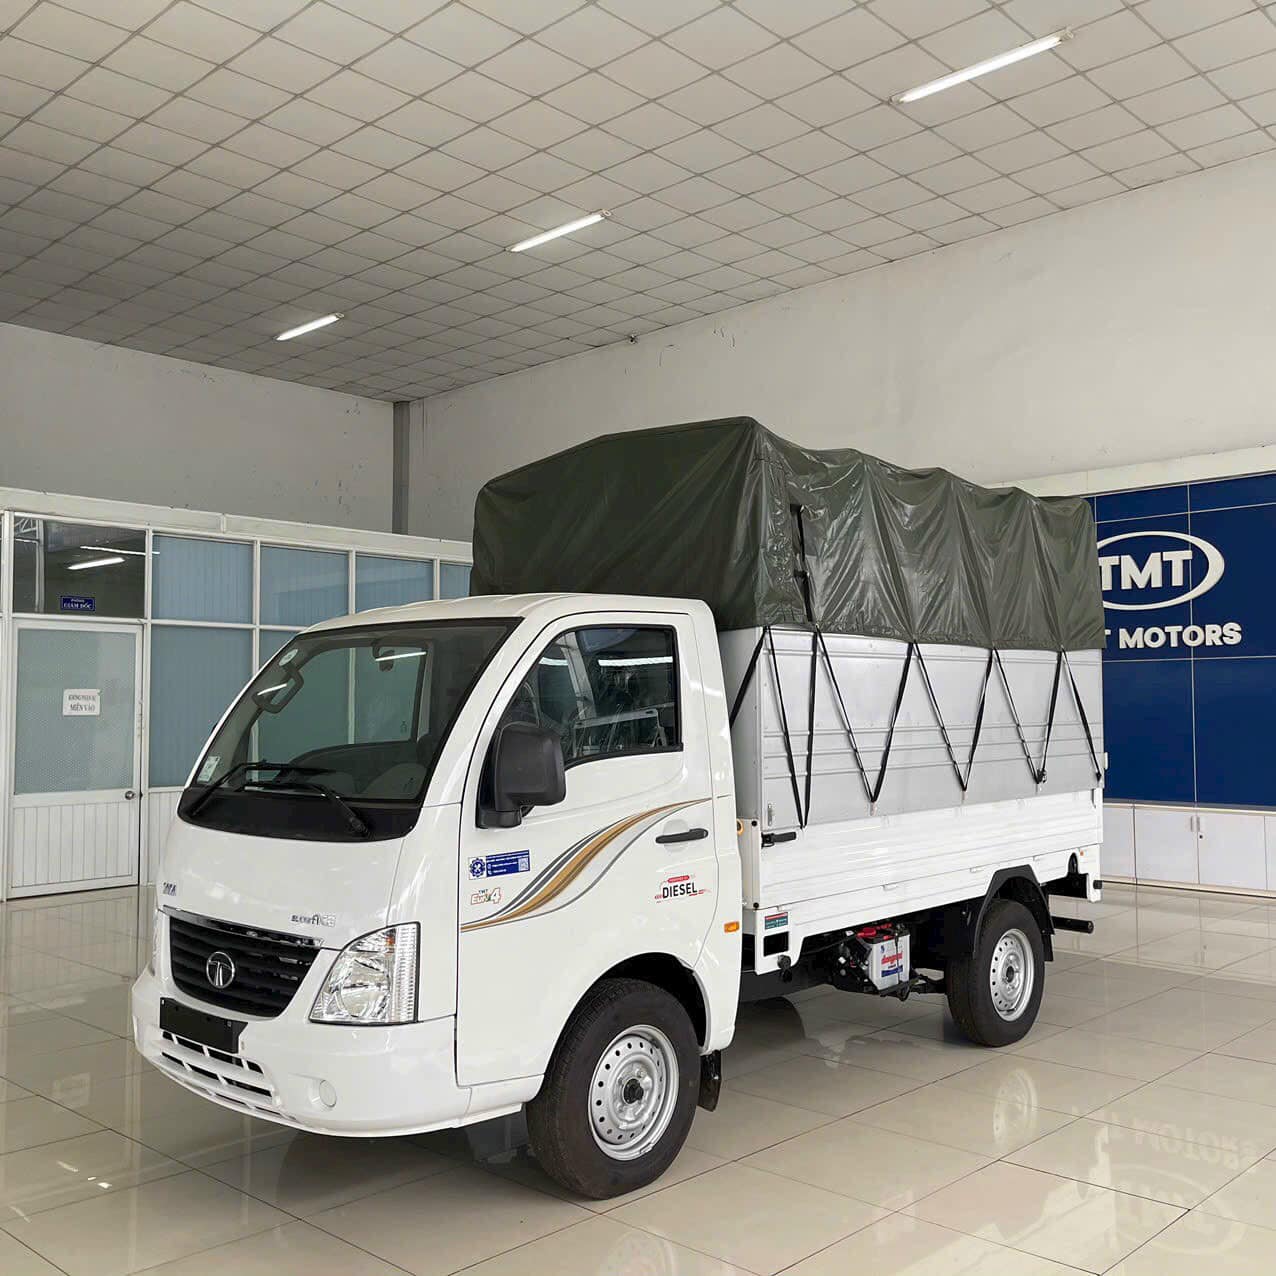 TƯ VẤN : Thay lốp xe tải Tata Super ACE ở Trảng Bom, Đồng Nai.